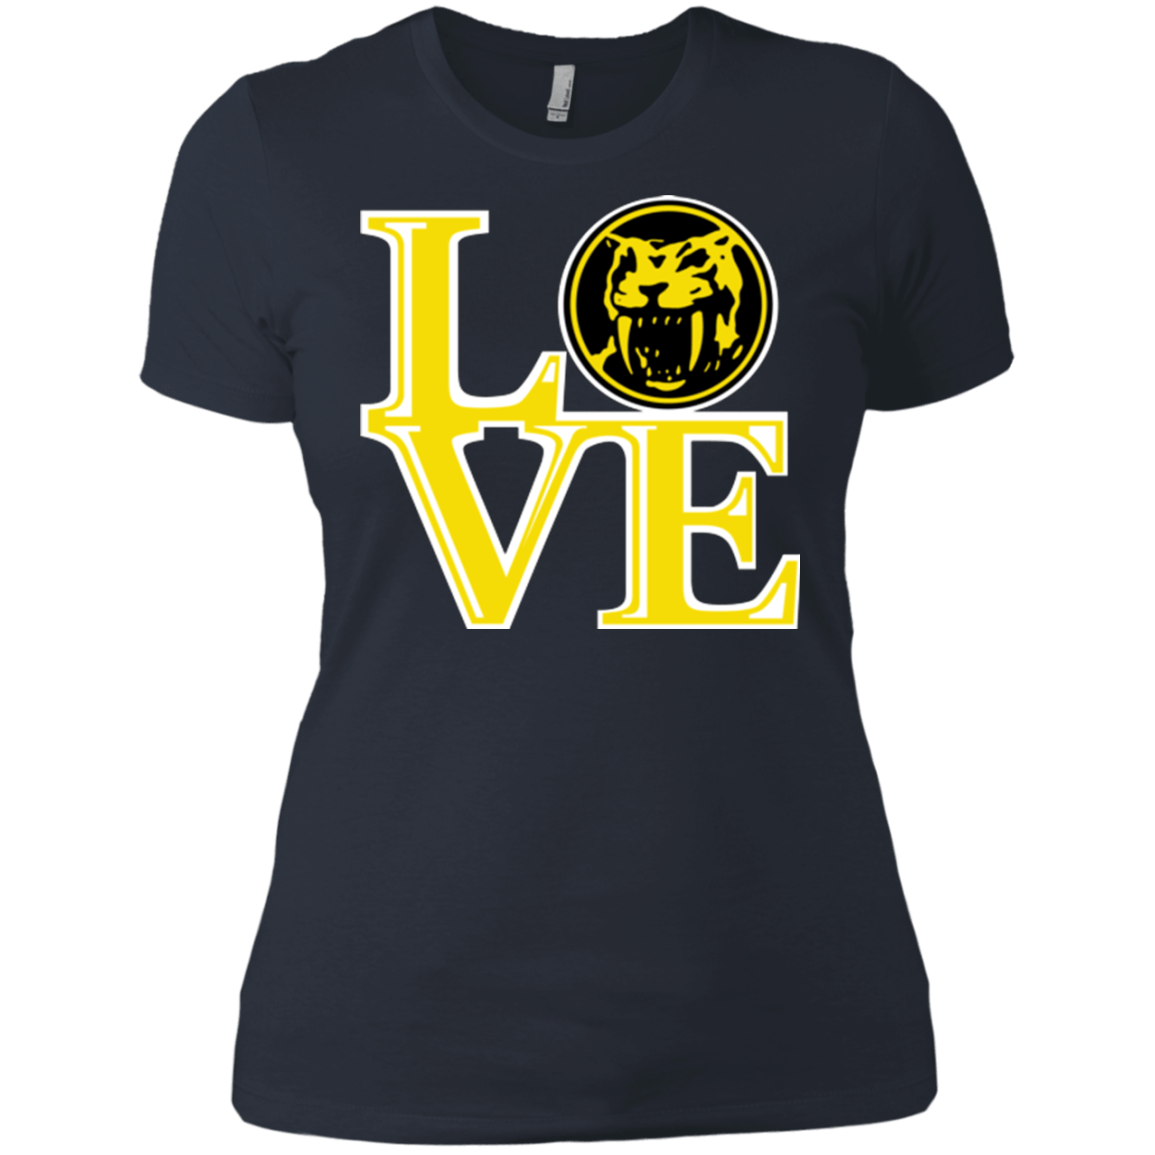 T-Shirts Indigo / X-Small Yellow Ranger LOVE Women's Premium T-Shirt